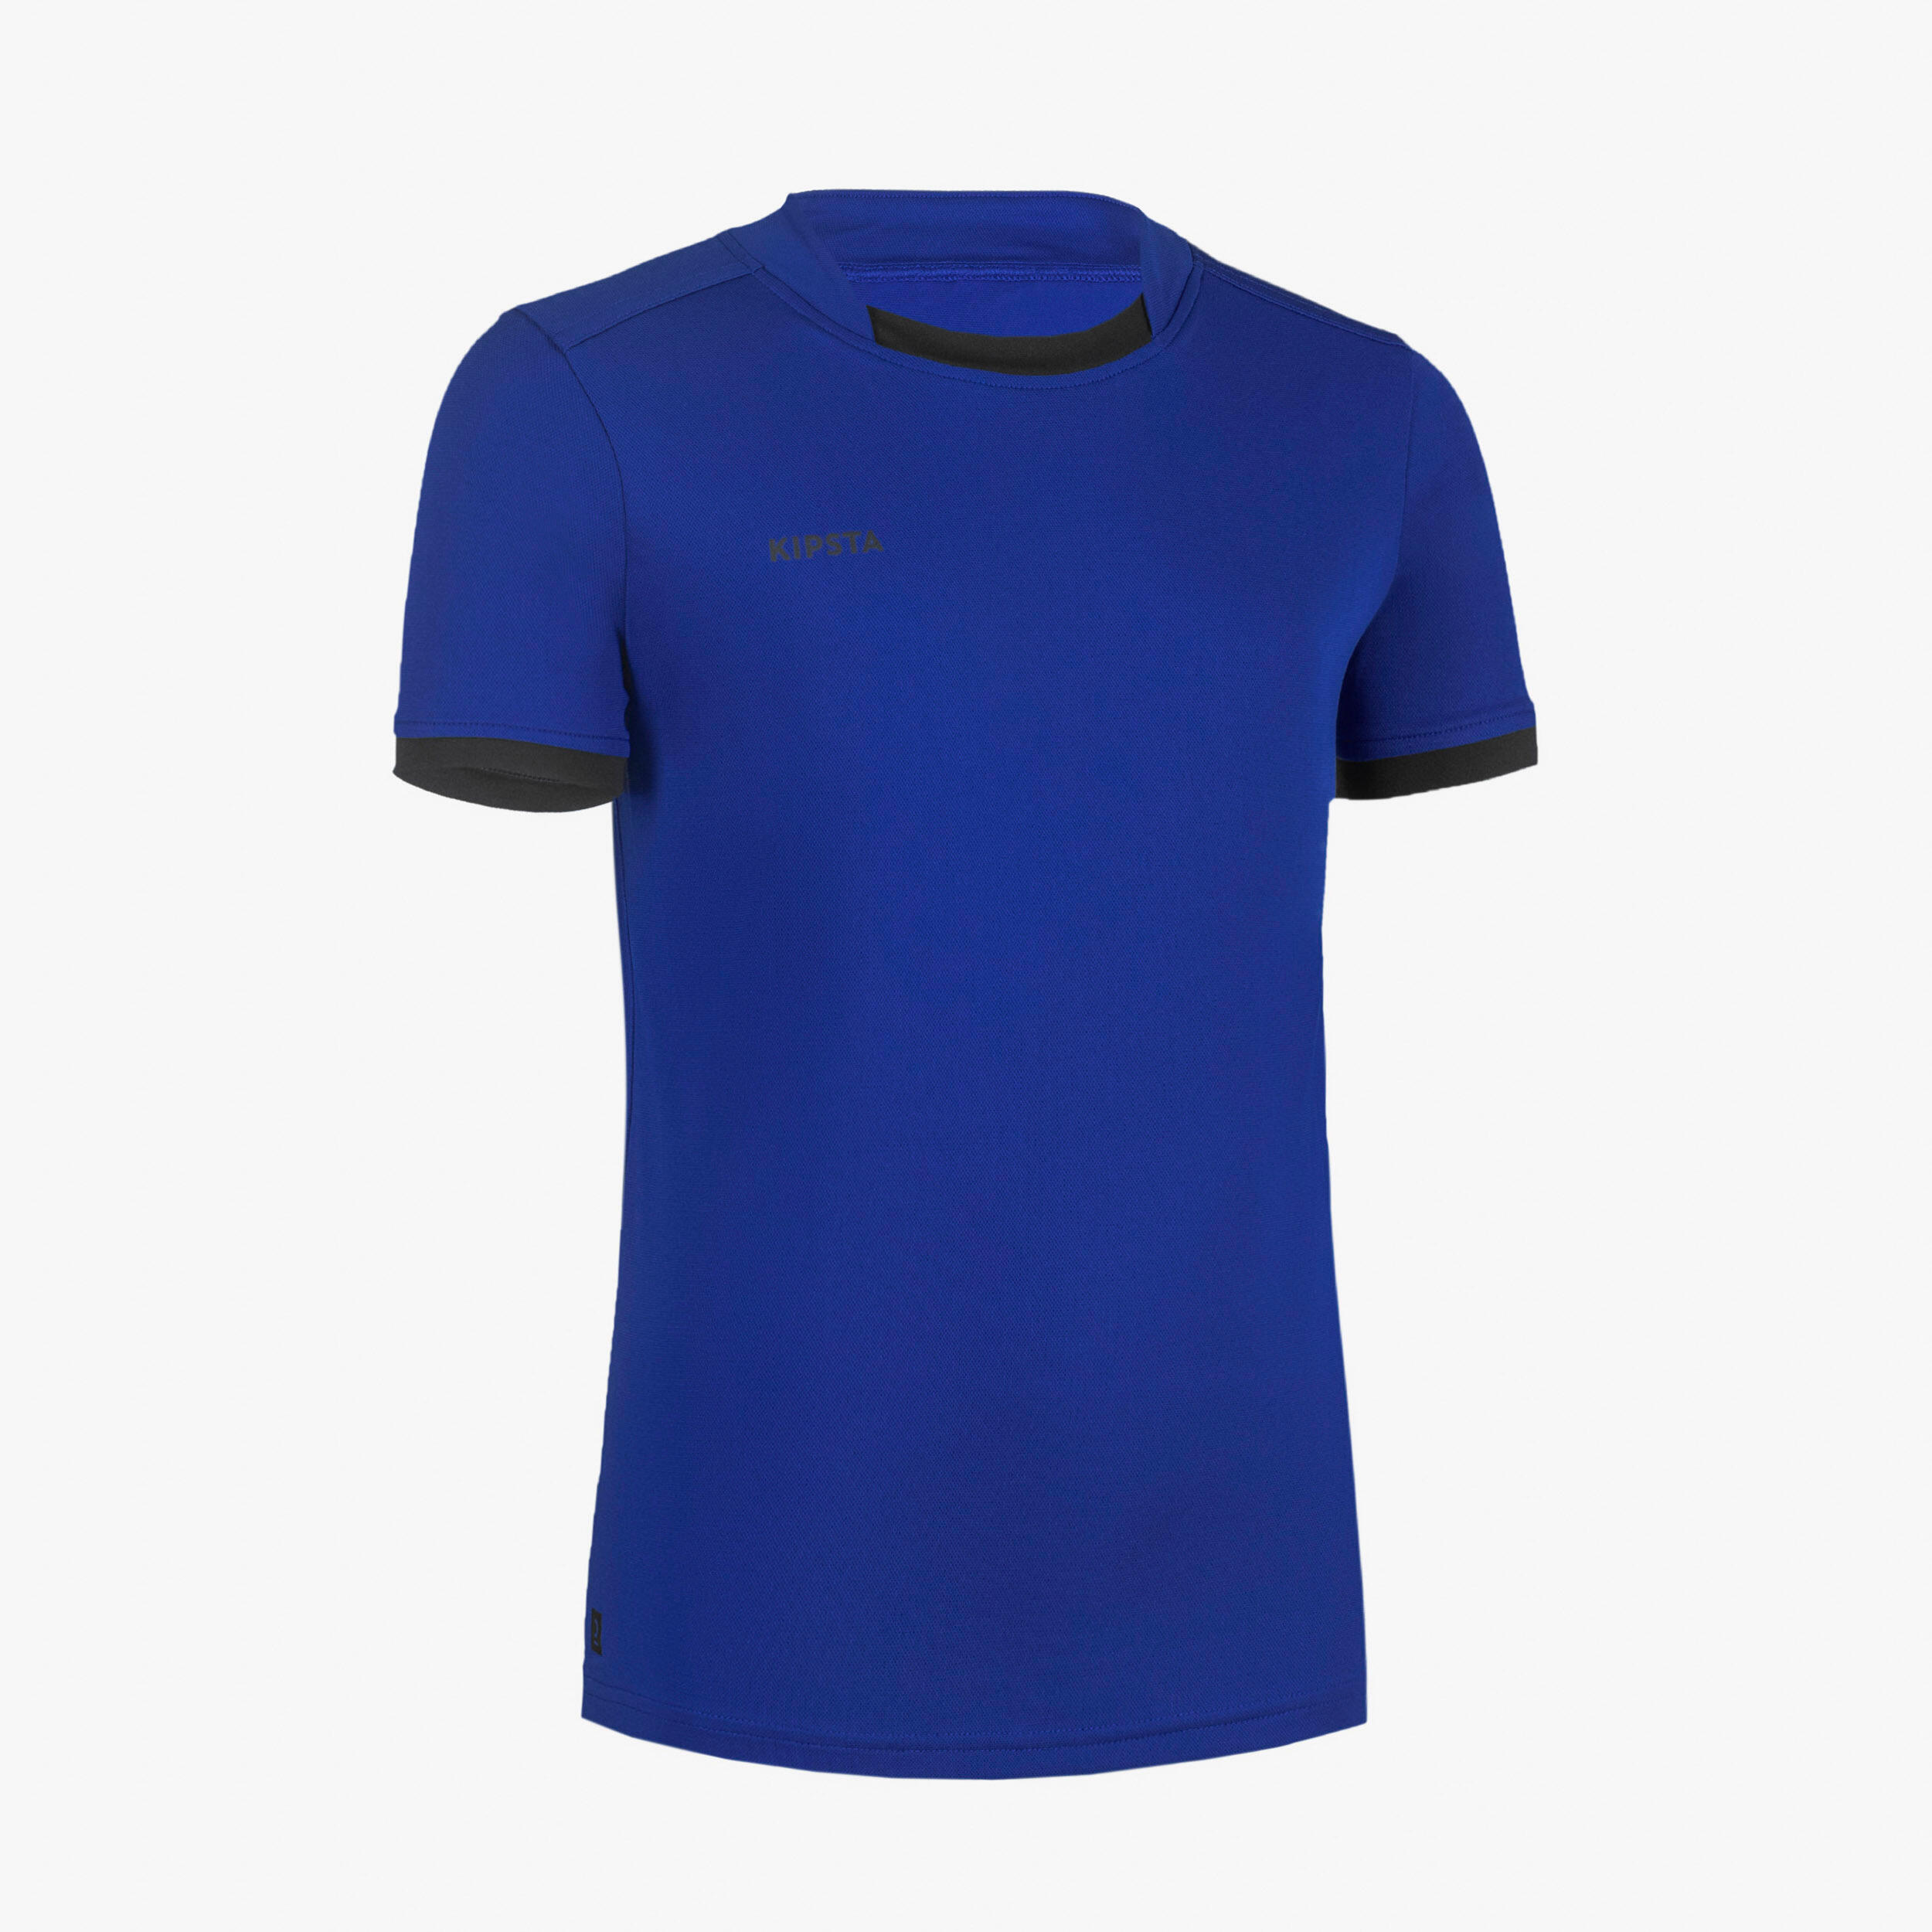 OFFLOAD Kids' Short-Sleeved Rugby Shirt R100 - Blue